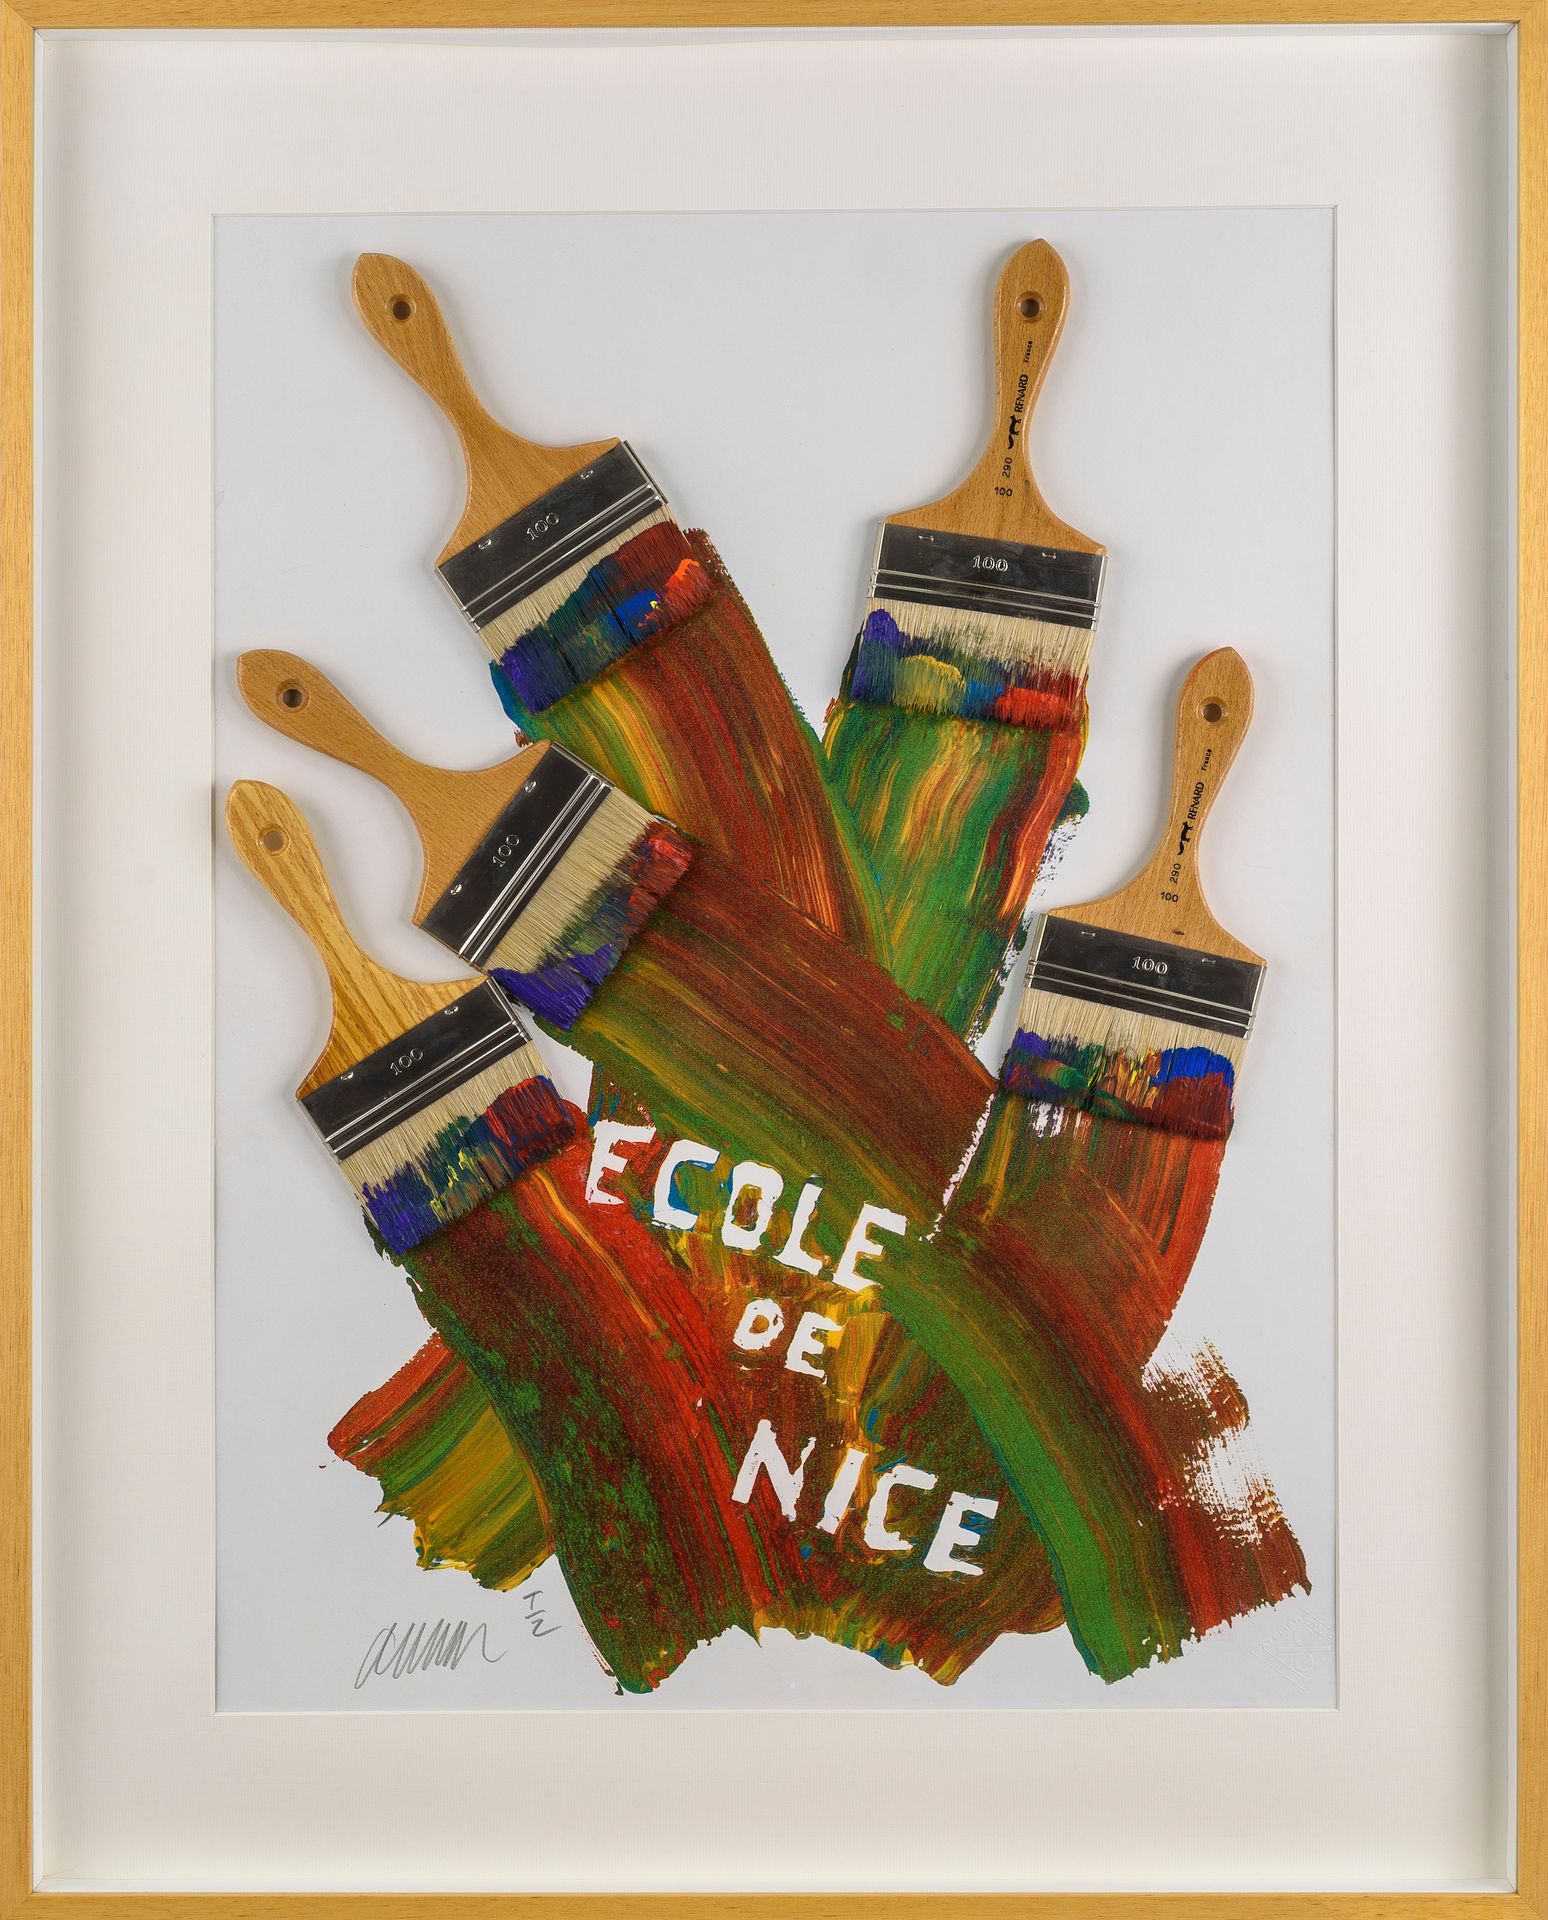 Null ARMAN (1928-2005)

École de Nice, 1987

Photogravure avec pinceaux véritabl&hellip;